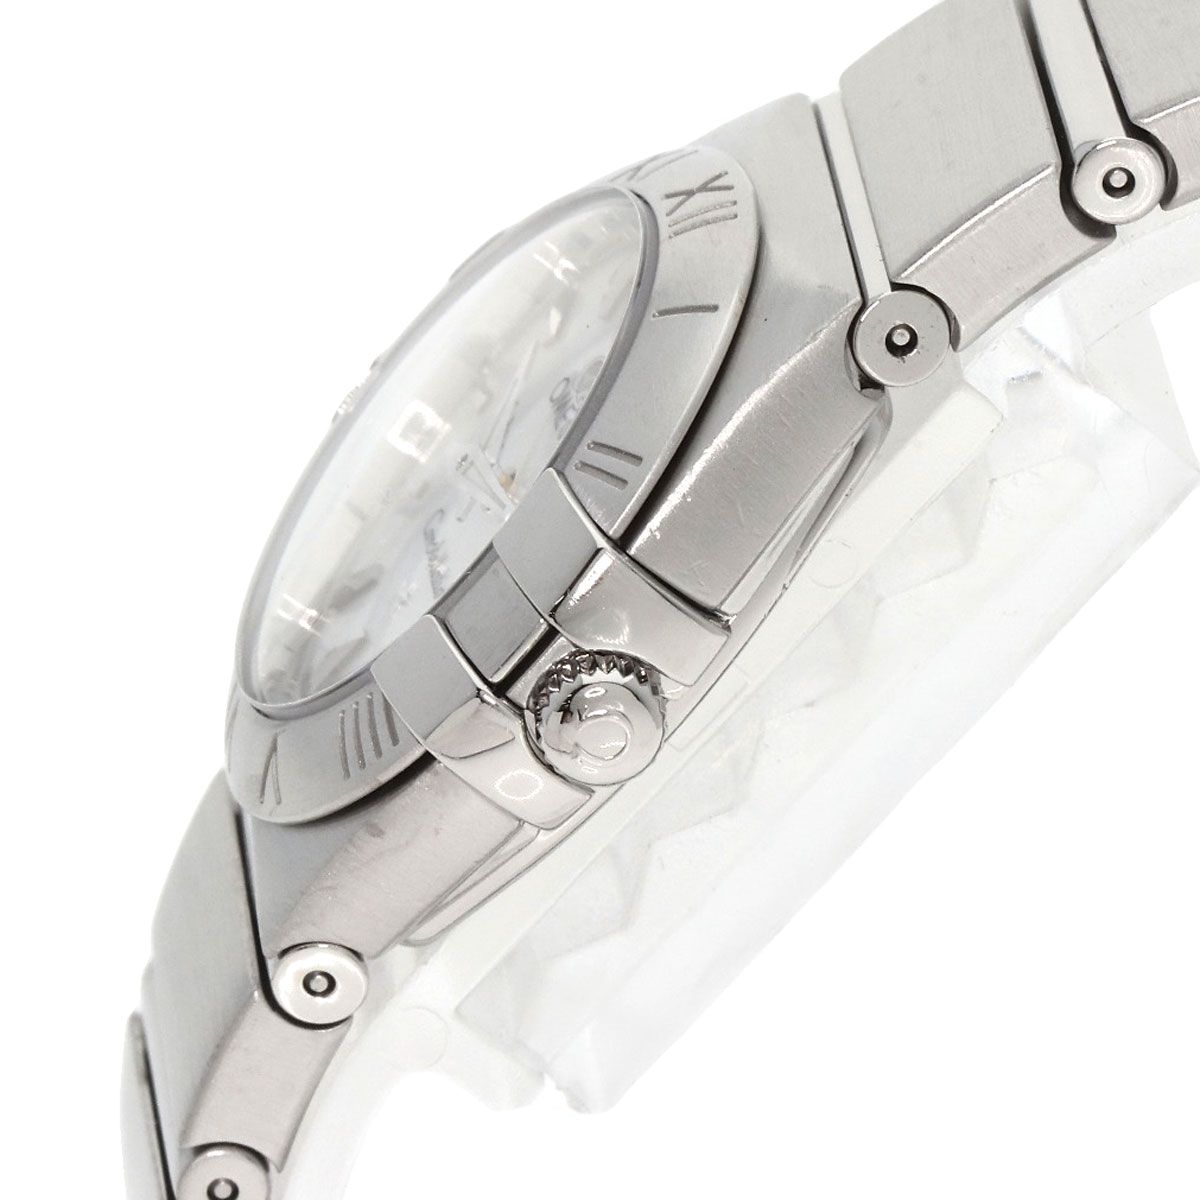 人気特売腕時計 新品 123.10.24.60.05.001 オメガ コンステレーション 並行輸入品 ホワイトパール文字盤 シルバー 未使用品 OMEGA コンステレーション